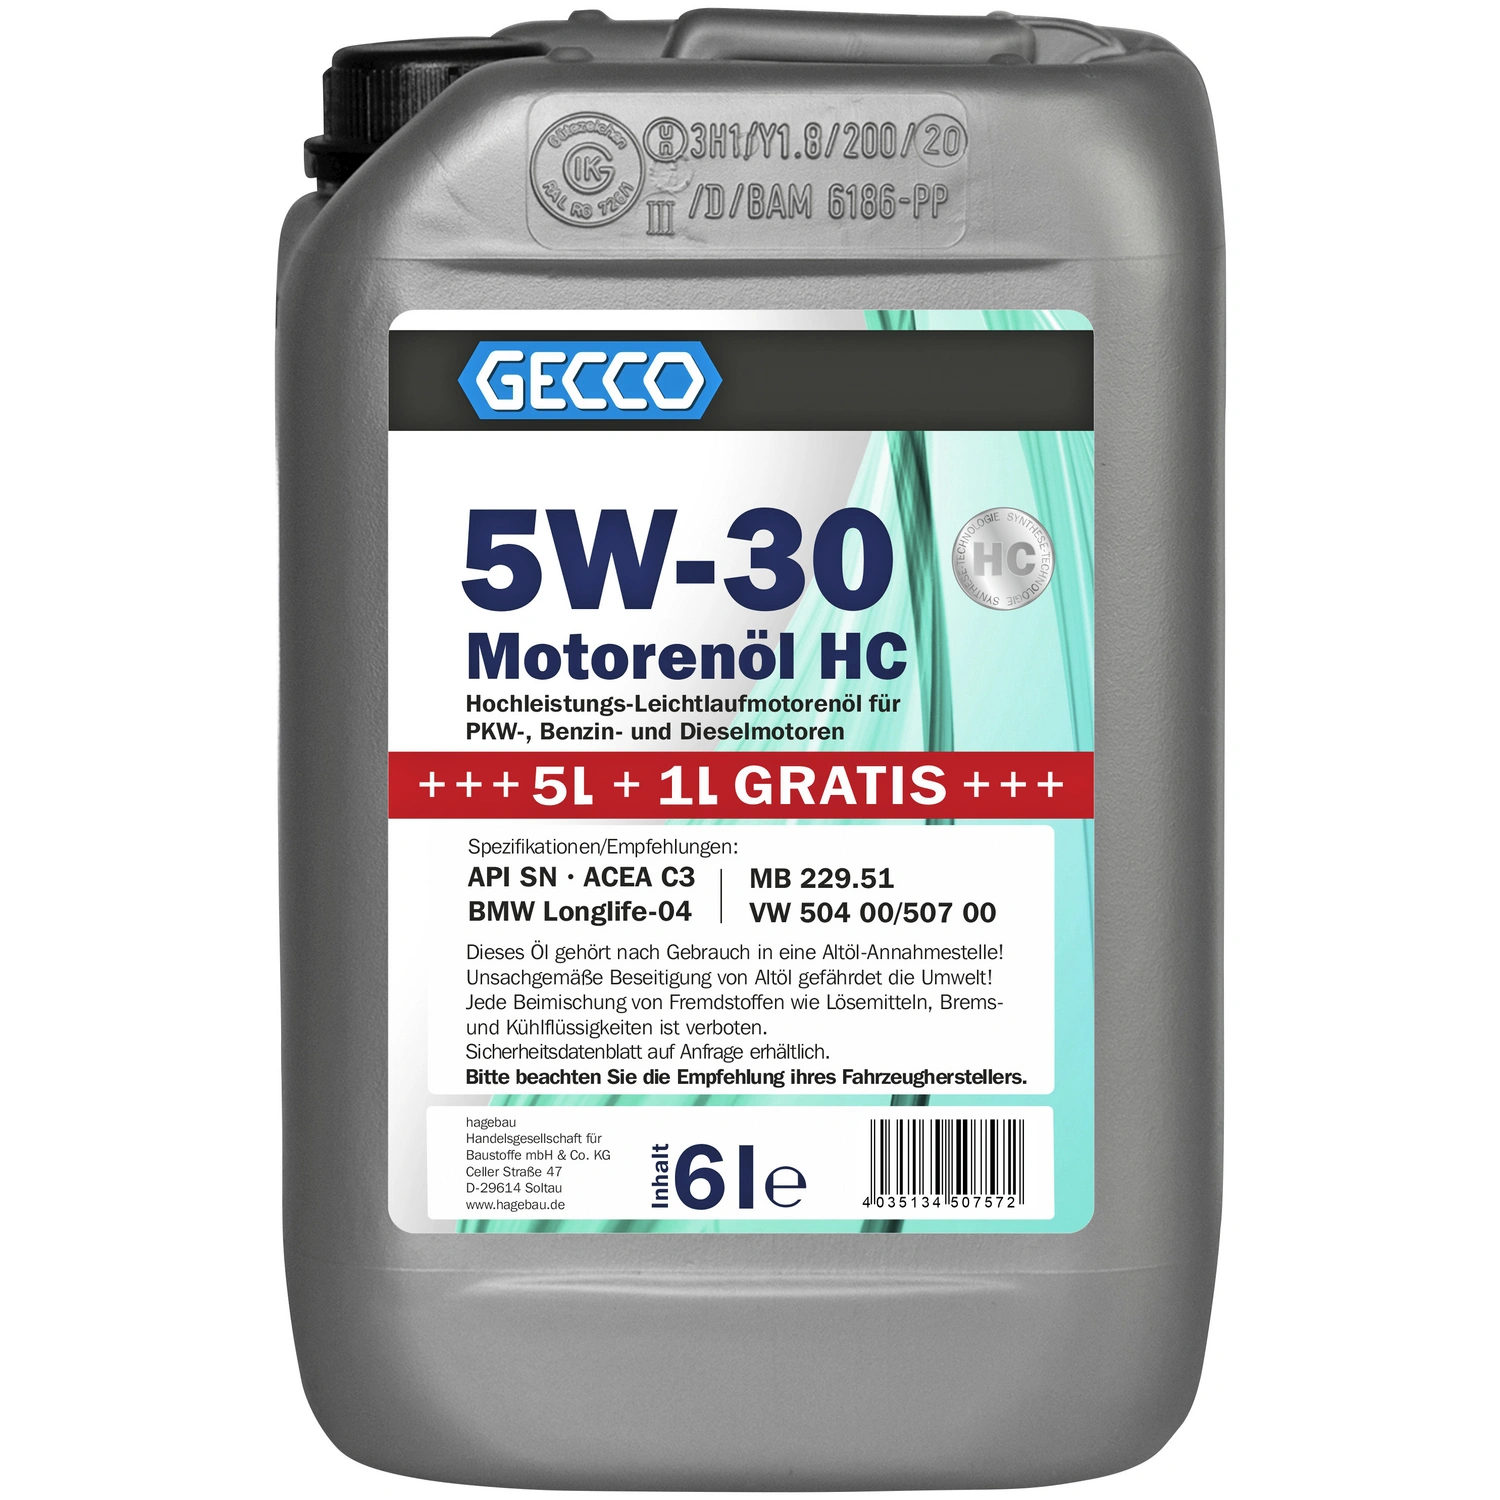 GECCO Motoröl »5W-30«, 6 l, Kanister, für PKW-, Benzin- und